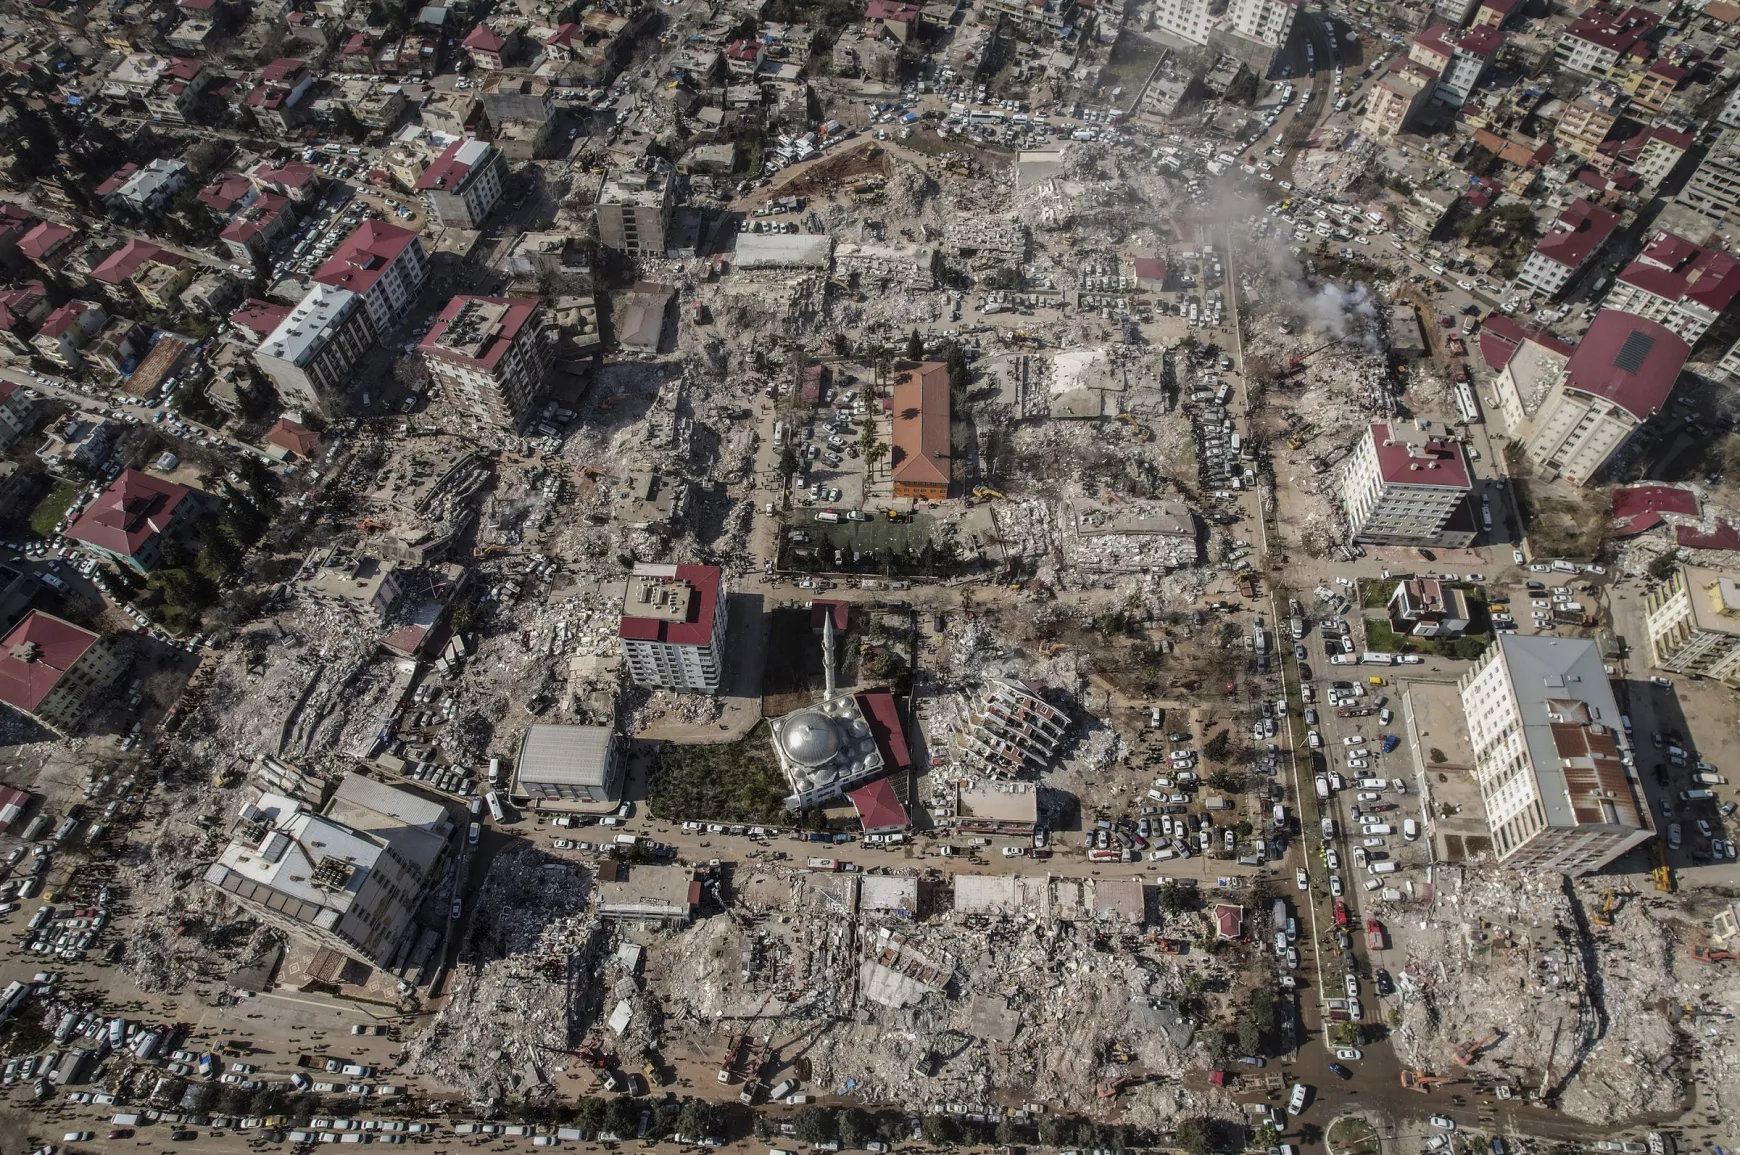 török-szíriai földrengés